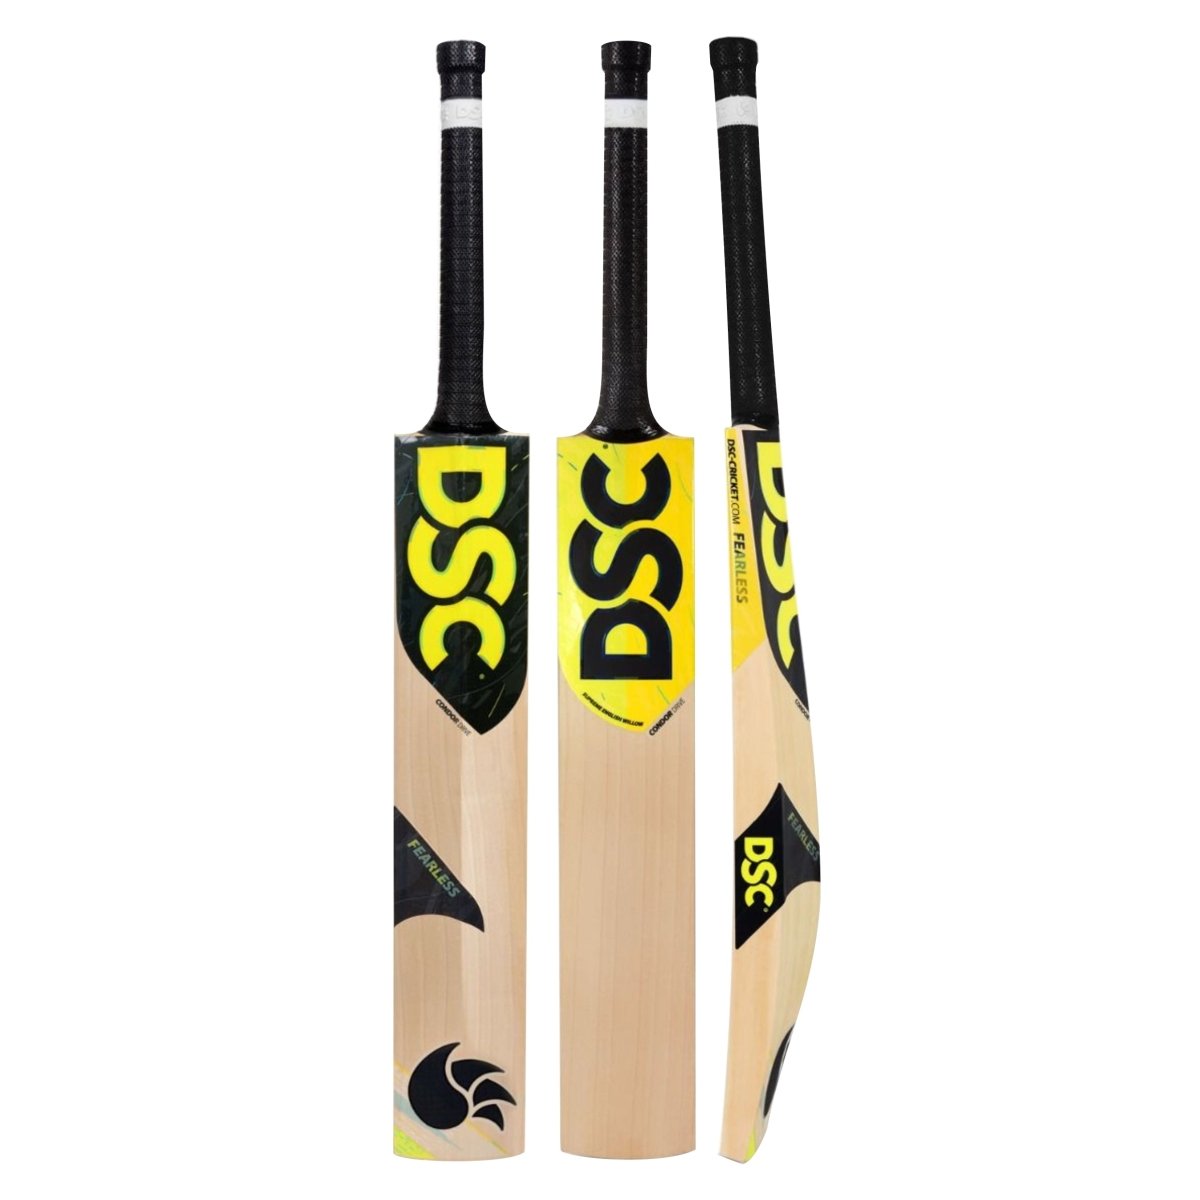 DSC Condor Drive English Willow Cricket Bat - Acrux Sports